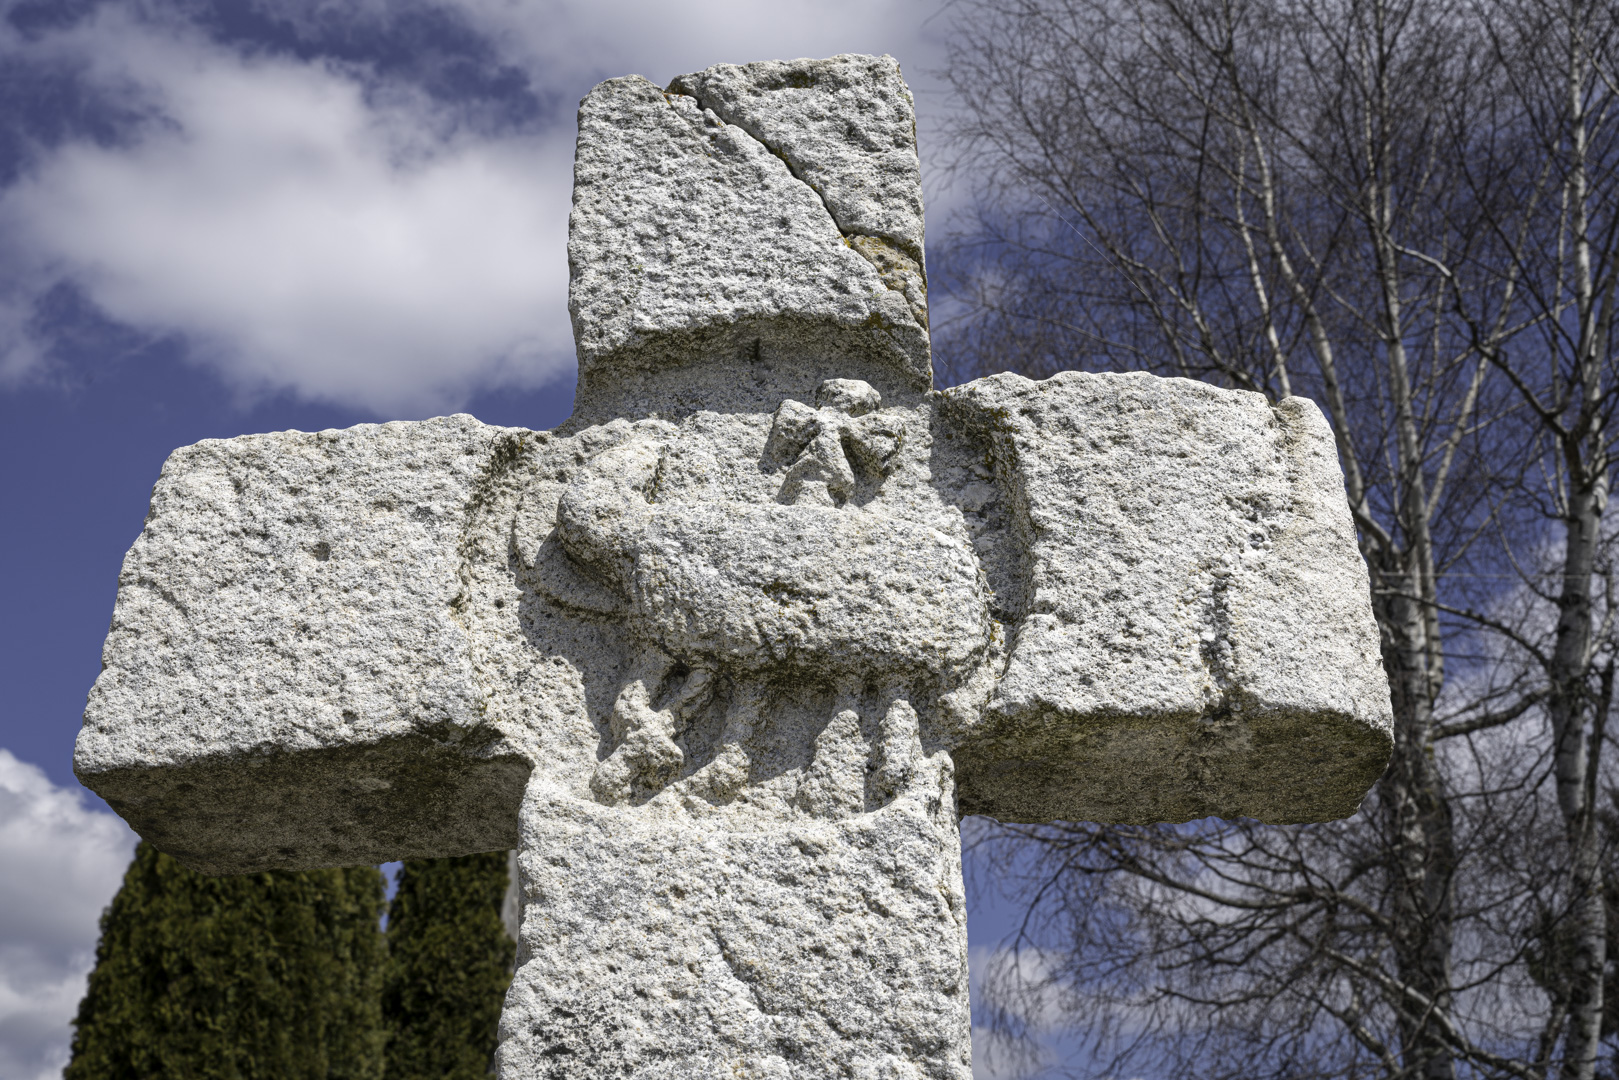 La "croix des anglais" à Saint-Chély-d'Apcher